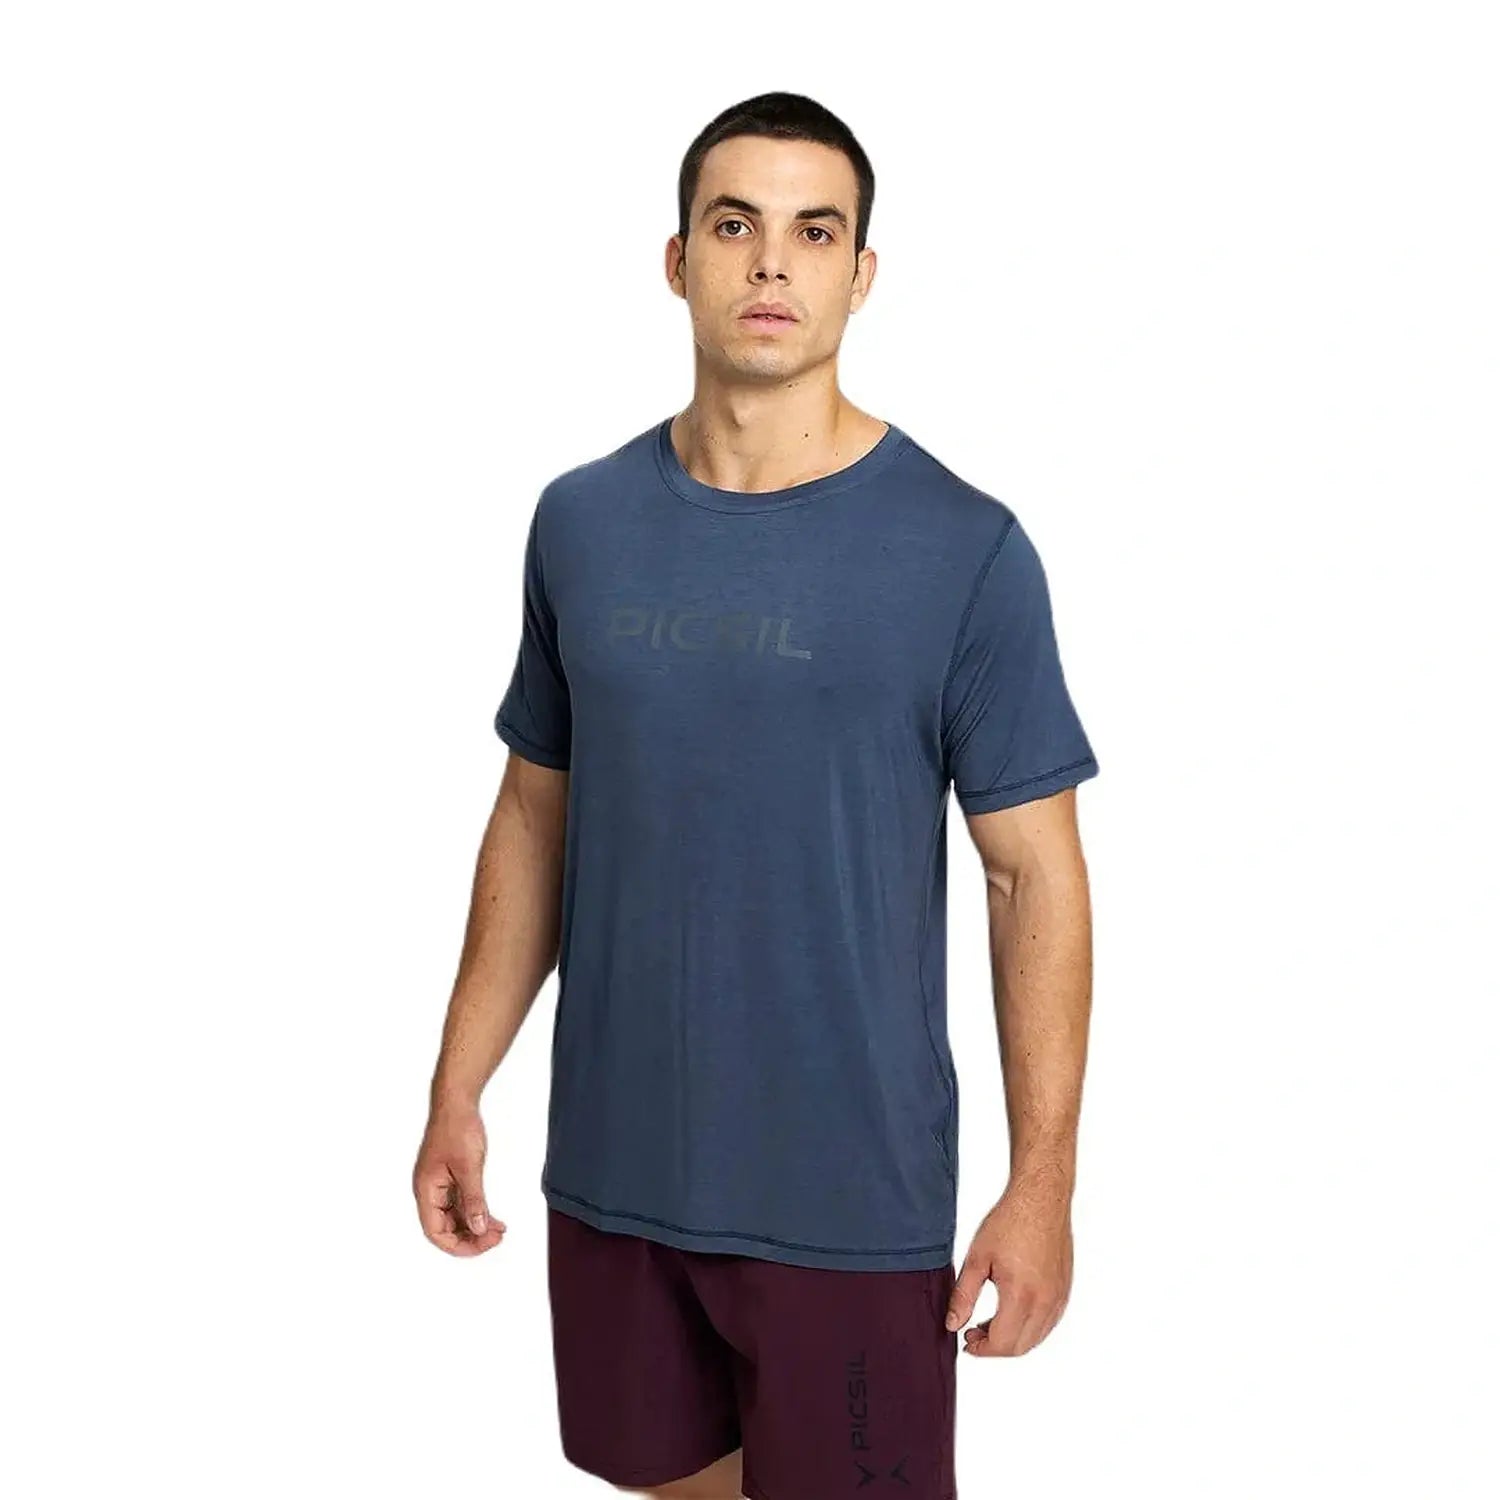 PicSil Herren Sport T-Shirt Kurzarm (Core) Blau kaufen bei HighPowered.ch